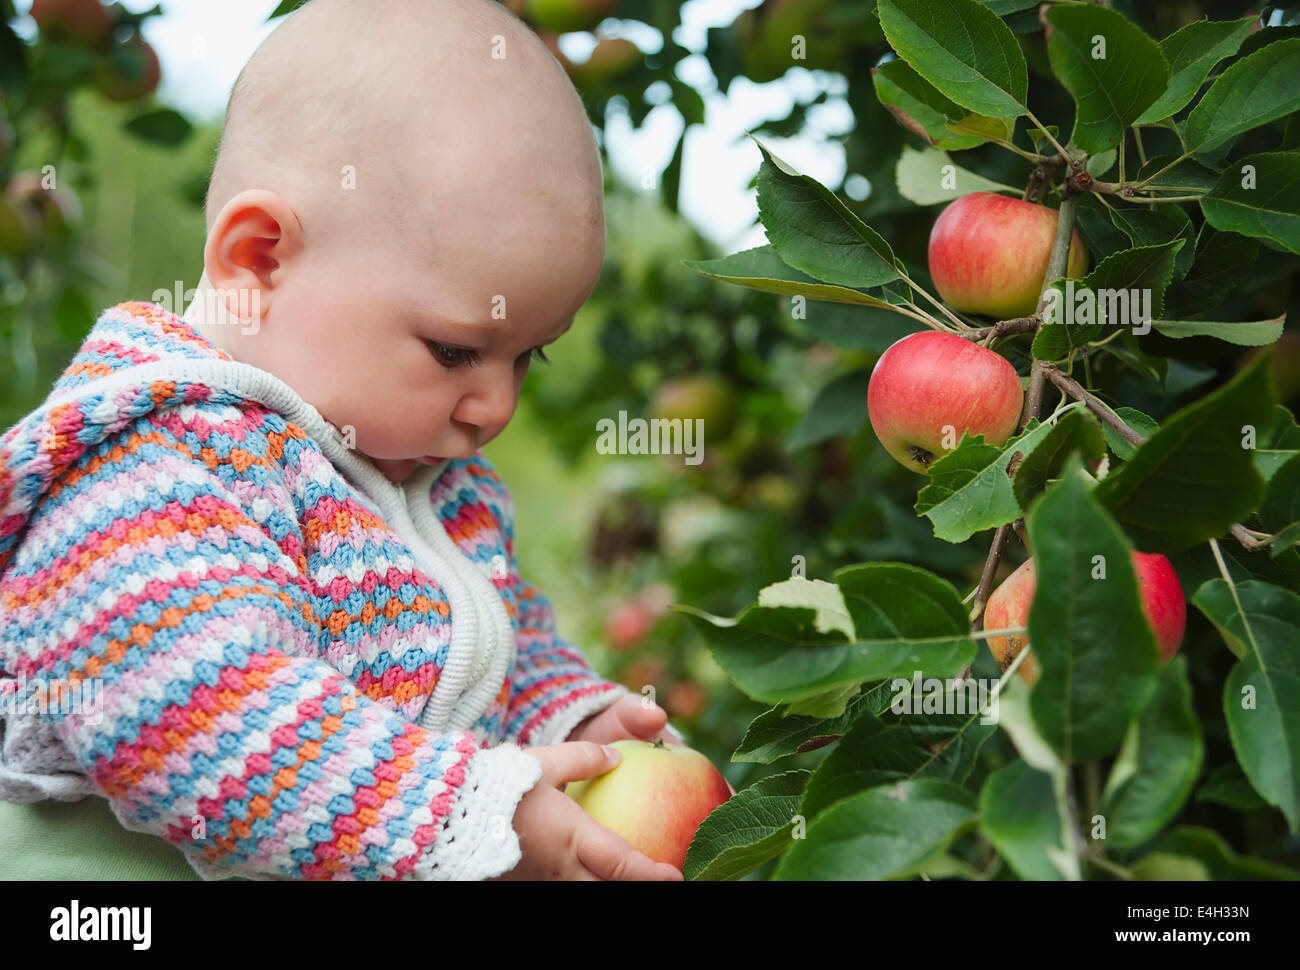 Apple, Malus domestica 'Discovery'. Stock Photo